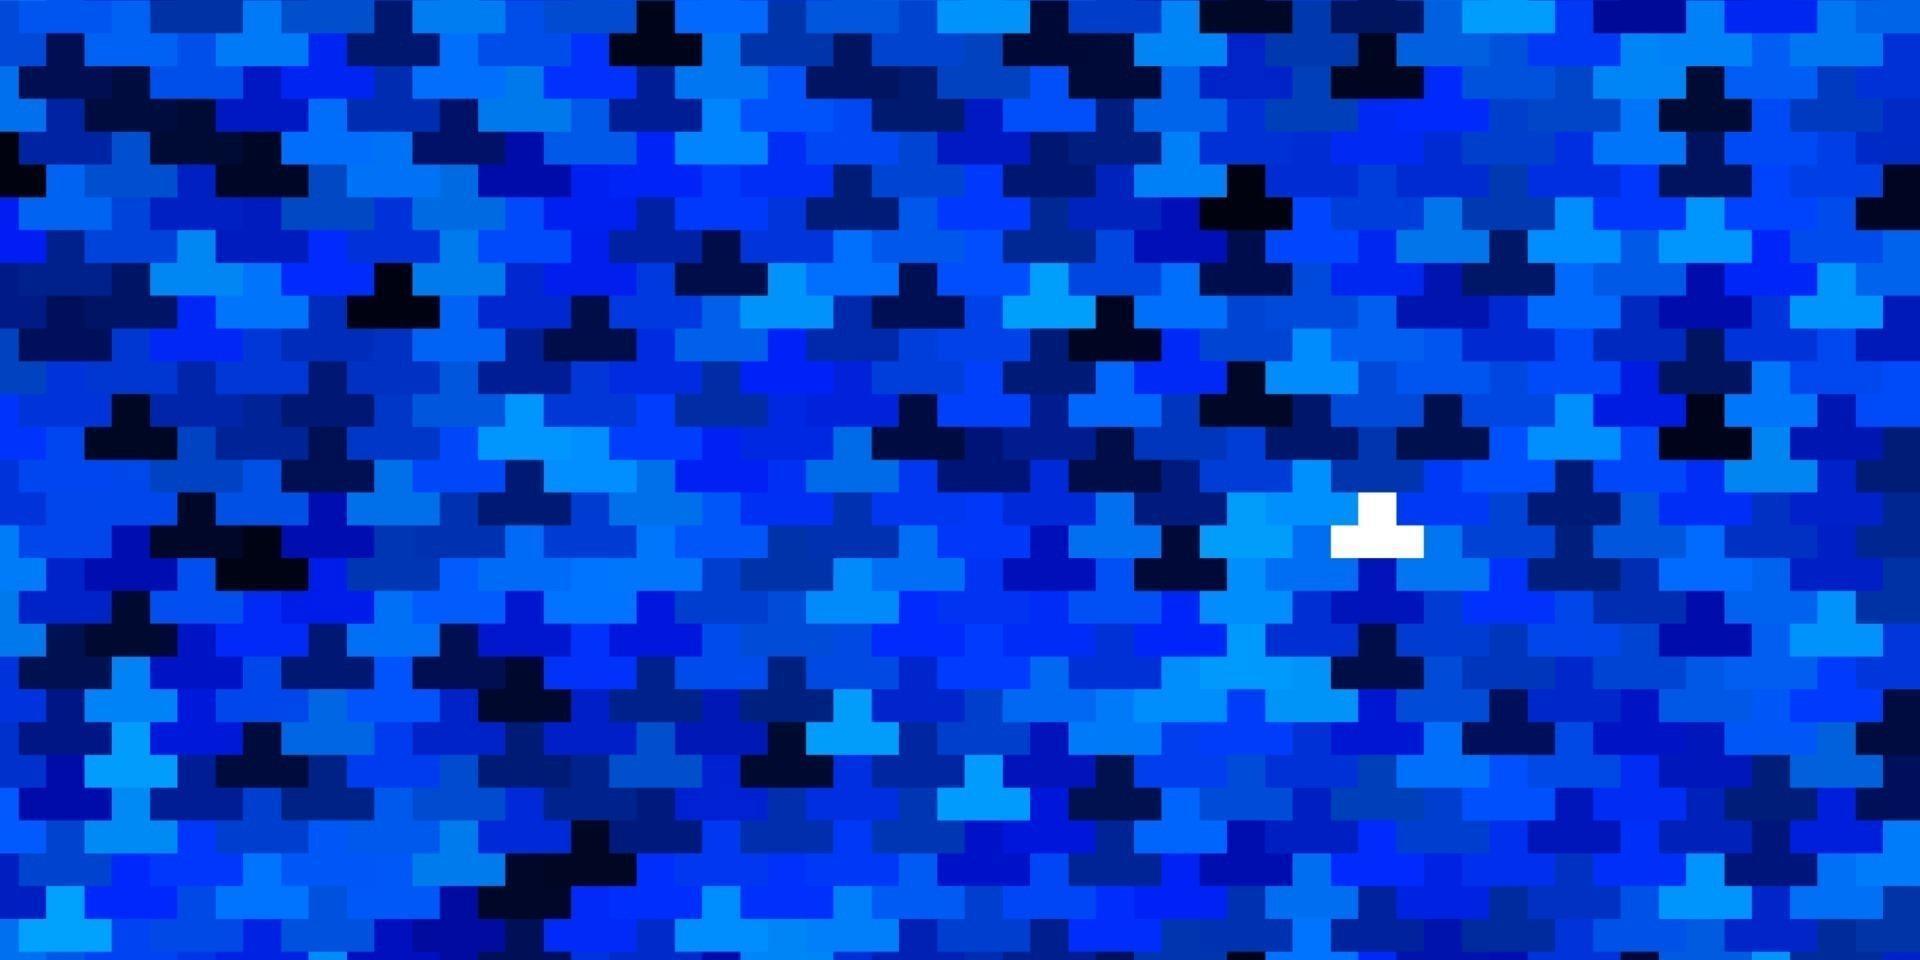 plantilla de vector azul oscuro con rectángulos.